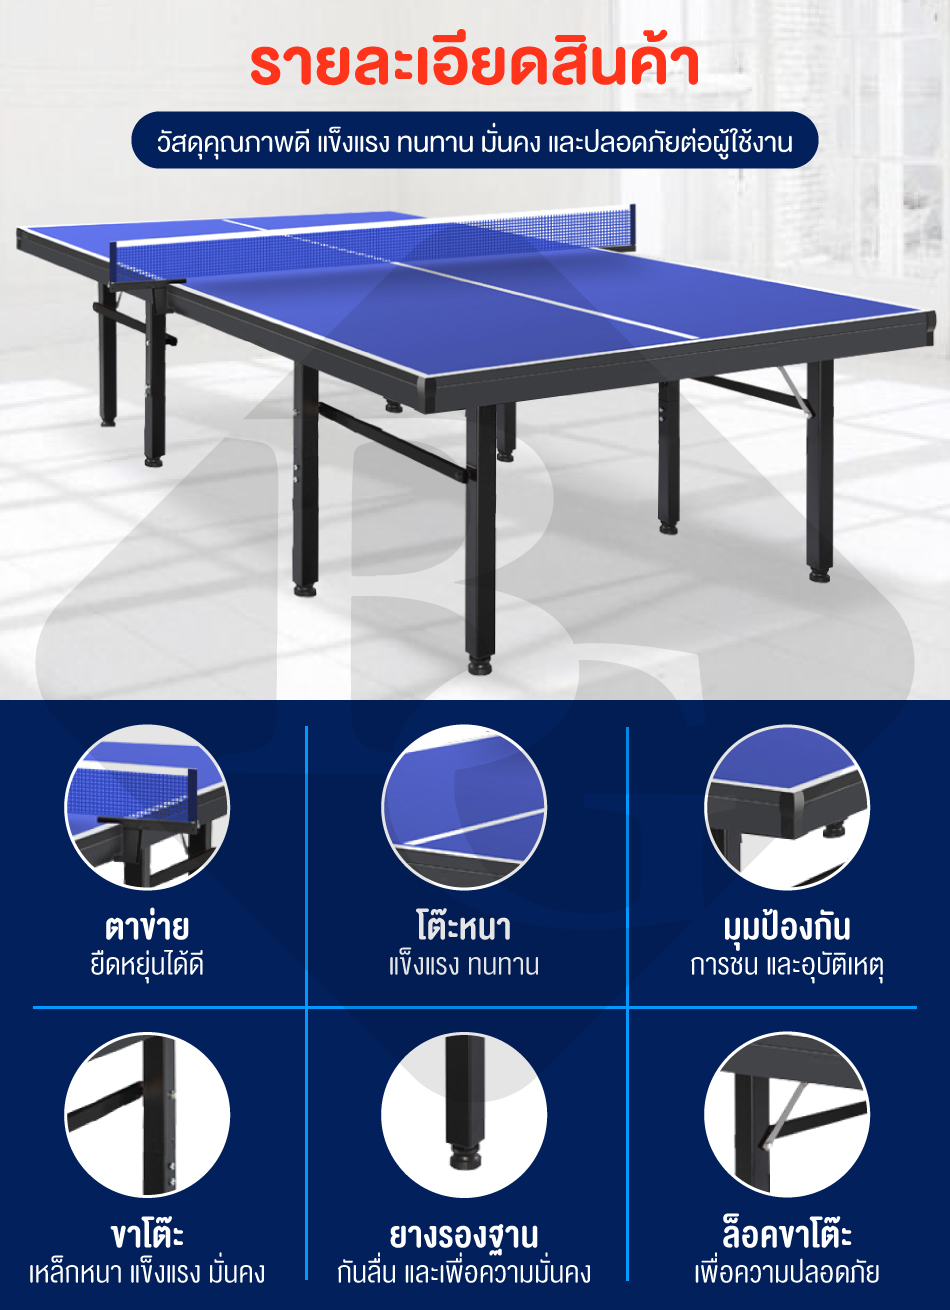 เกี่ยวกับ B&G โต๊ะปิงปองมาตรฐานแข่งขัน โต๊ะปิงปอง ออกกำลังกายในร่ม สามารถพับเก็บได้ โครงเหล็กแข็งแรง Table 12.24 mm HDF Table Tennis รุ่น 5007